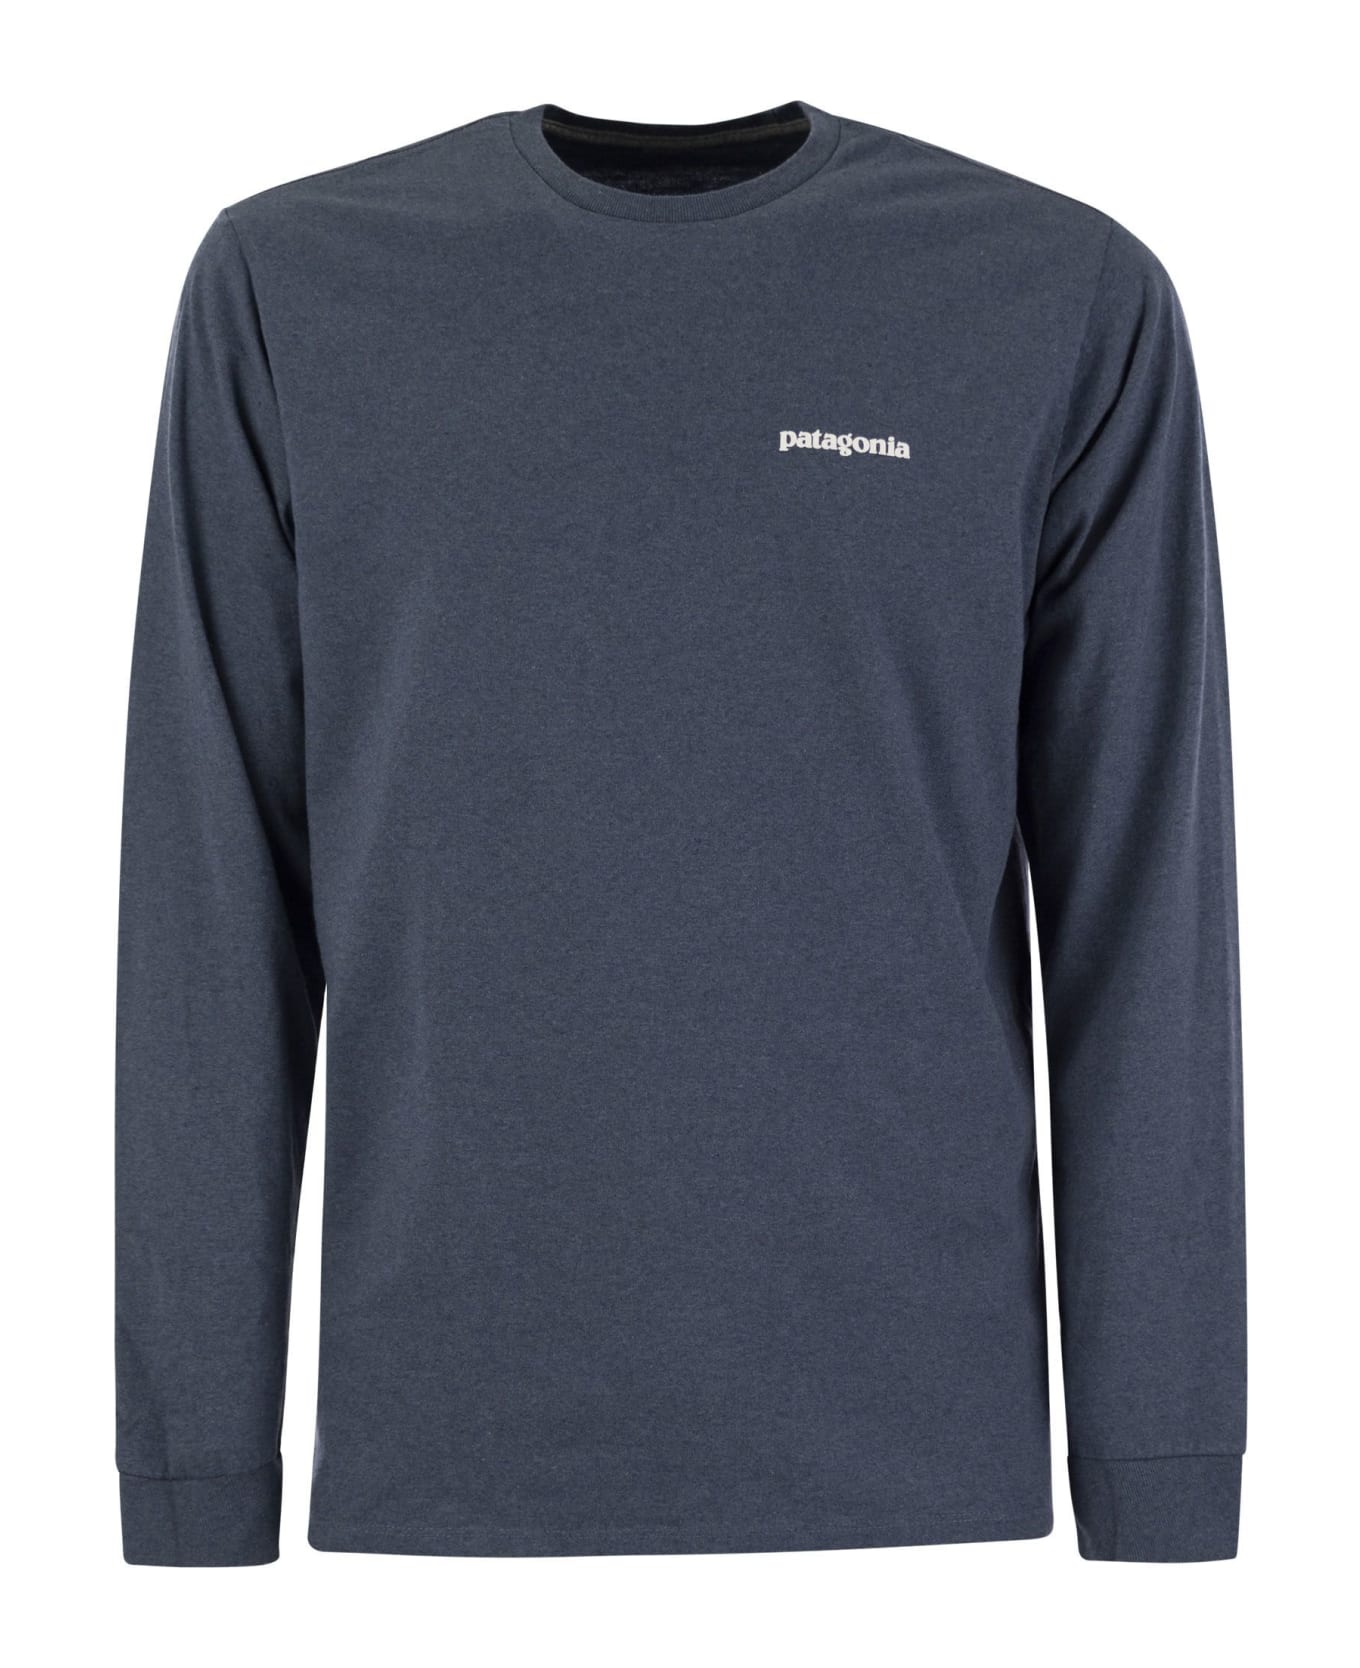 Patagonia T-shirt With Logo Long Sleeves - Avio